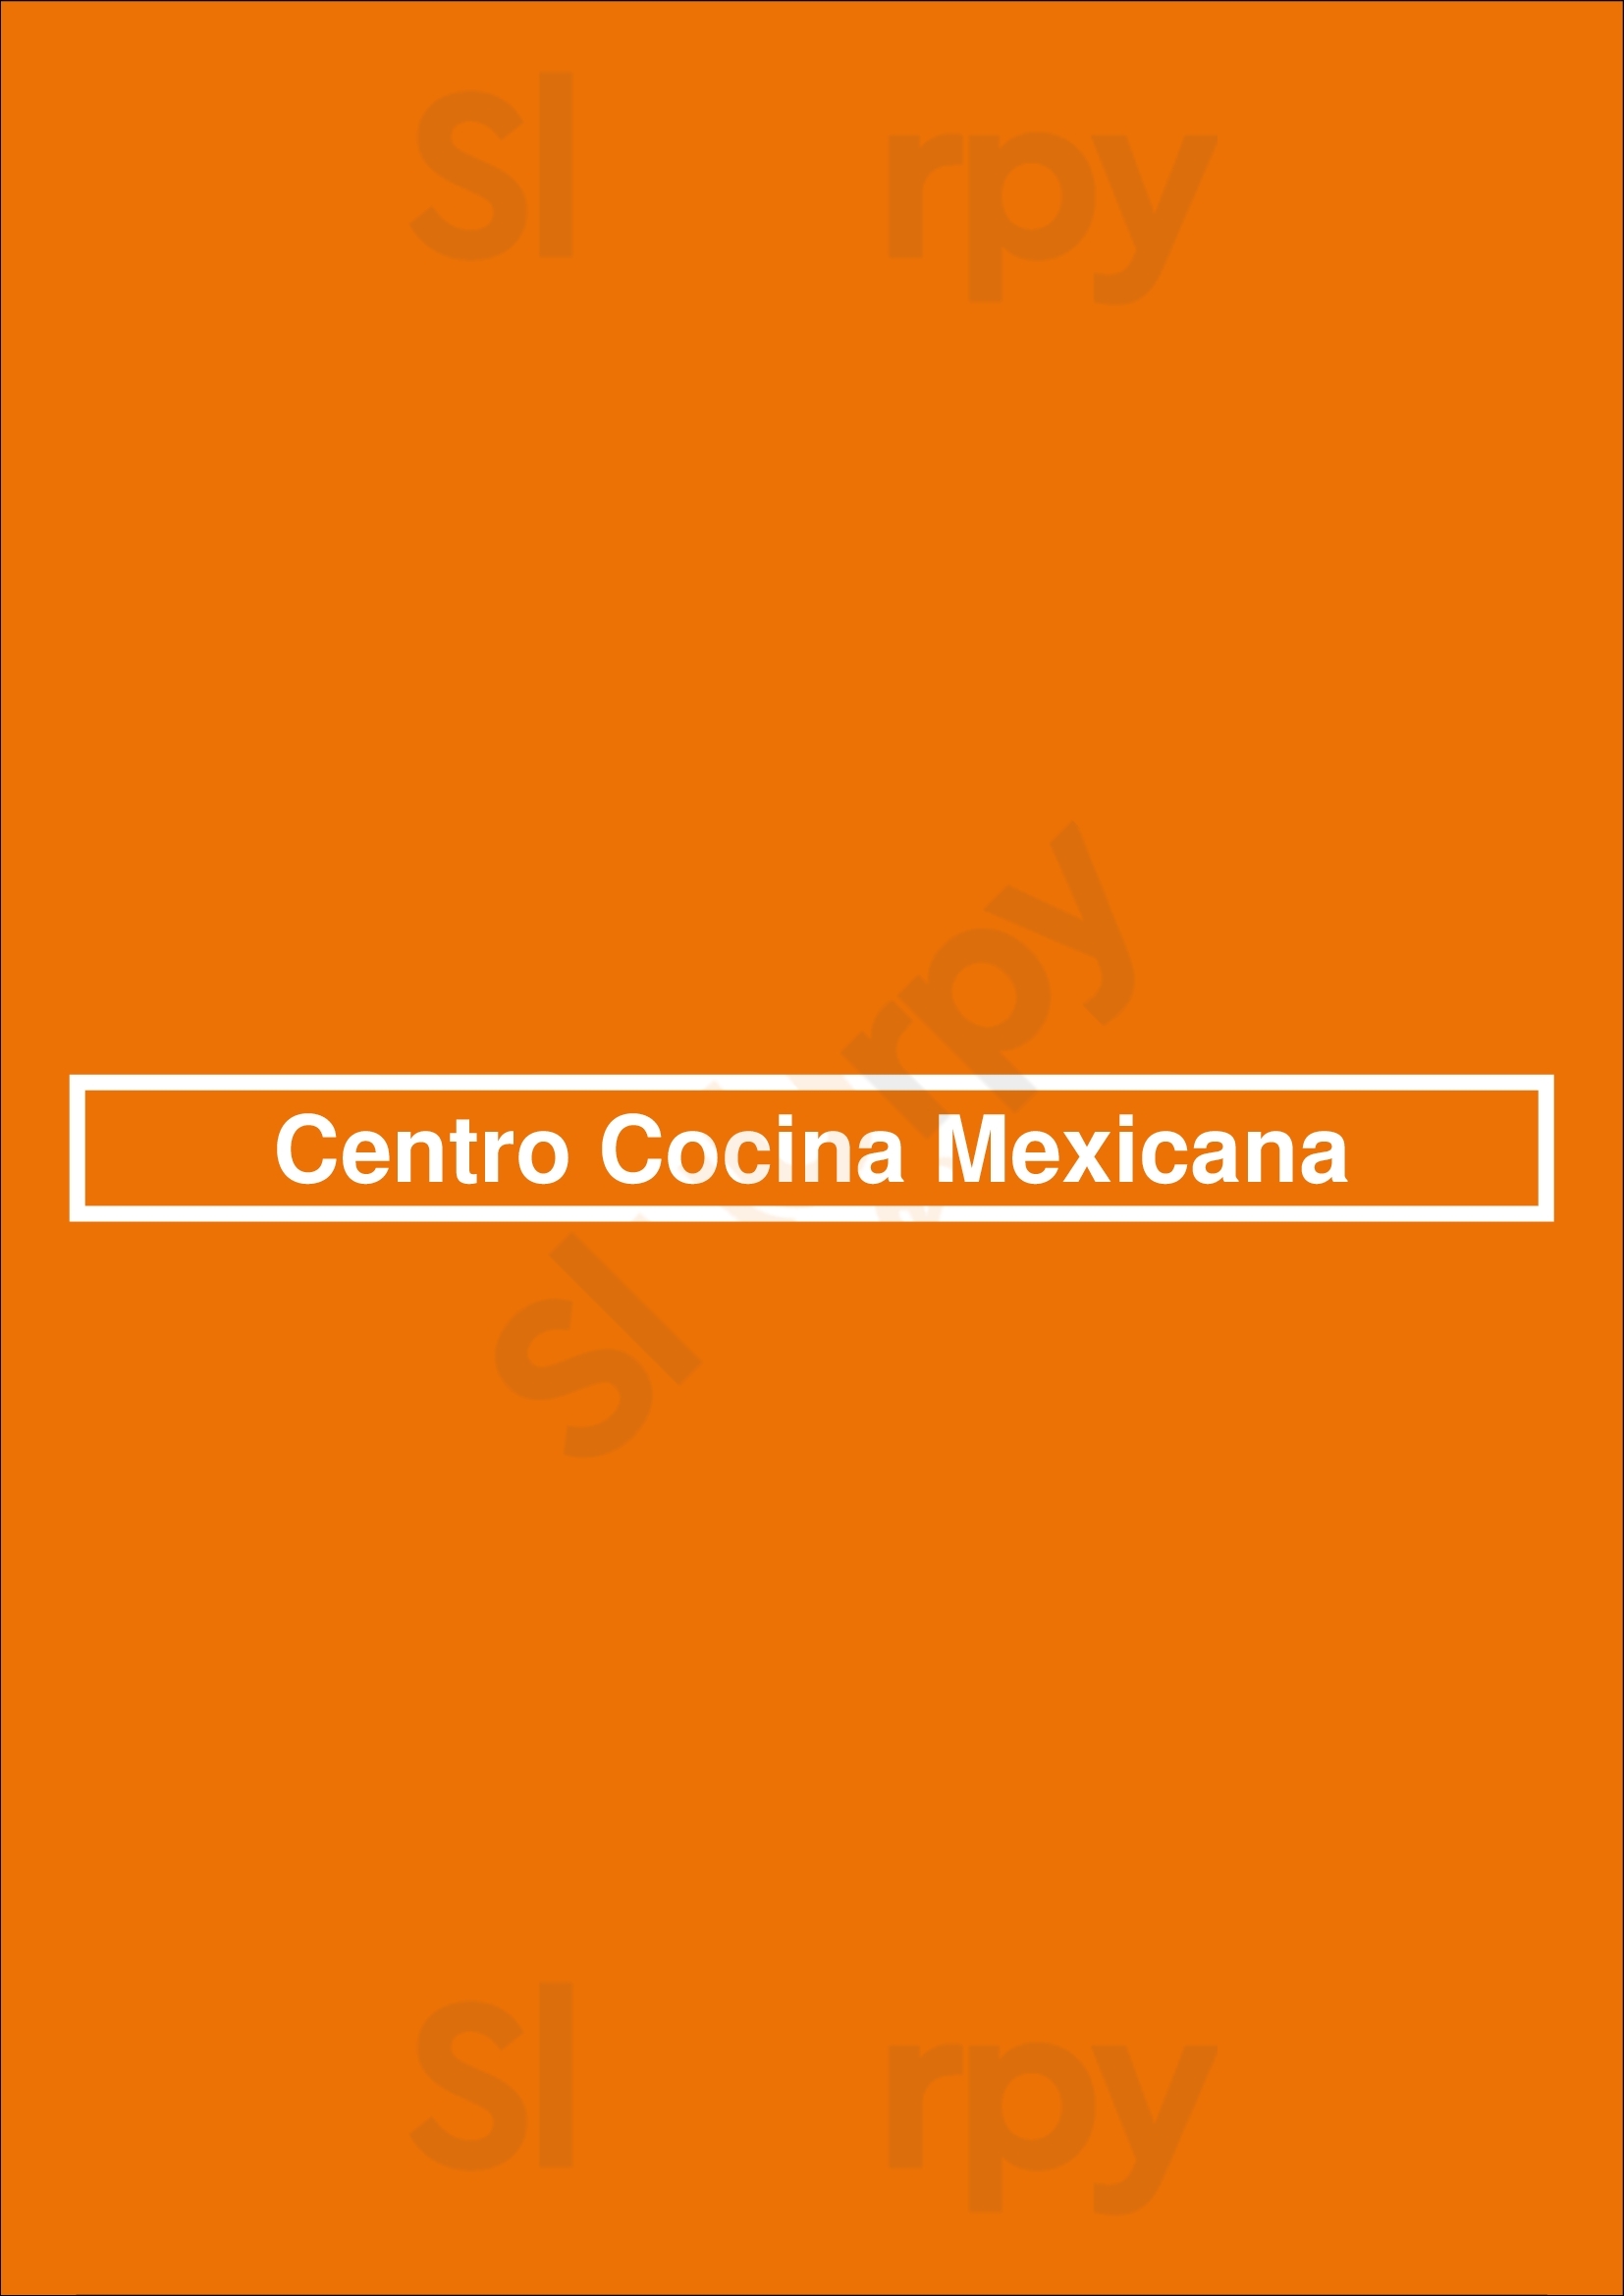 Centro Cocina Mexicana Sacramento Menu - 1